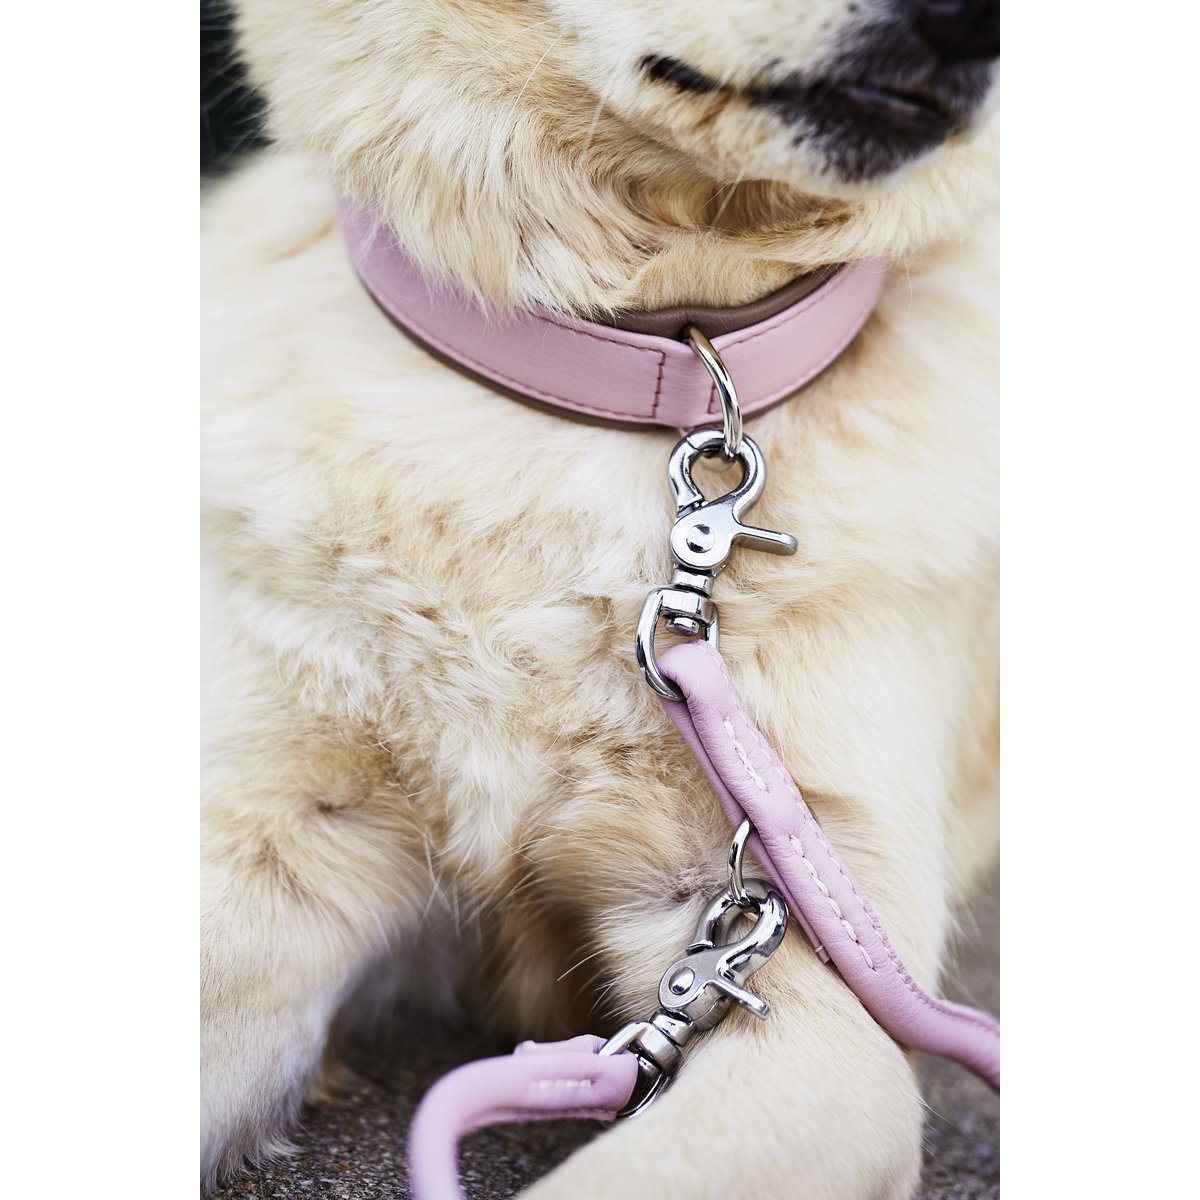 AMICI Hondenriem Rose
De AMICI-collectie biedt een scala aan hondenriemen en halsbanden van hoogwaardig nappaleder, waardoor ze comfortabel en duurzaam zijn voor zowel mens als dier. MetLABONIwafwafAMICI Hondenriem Rose